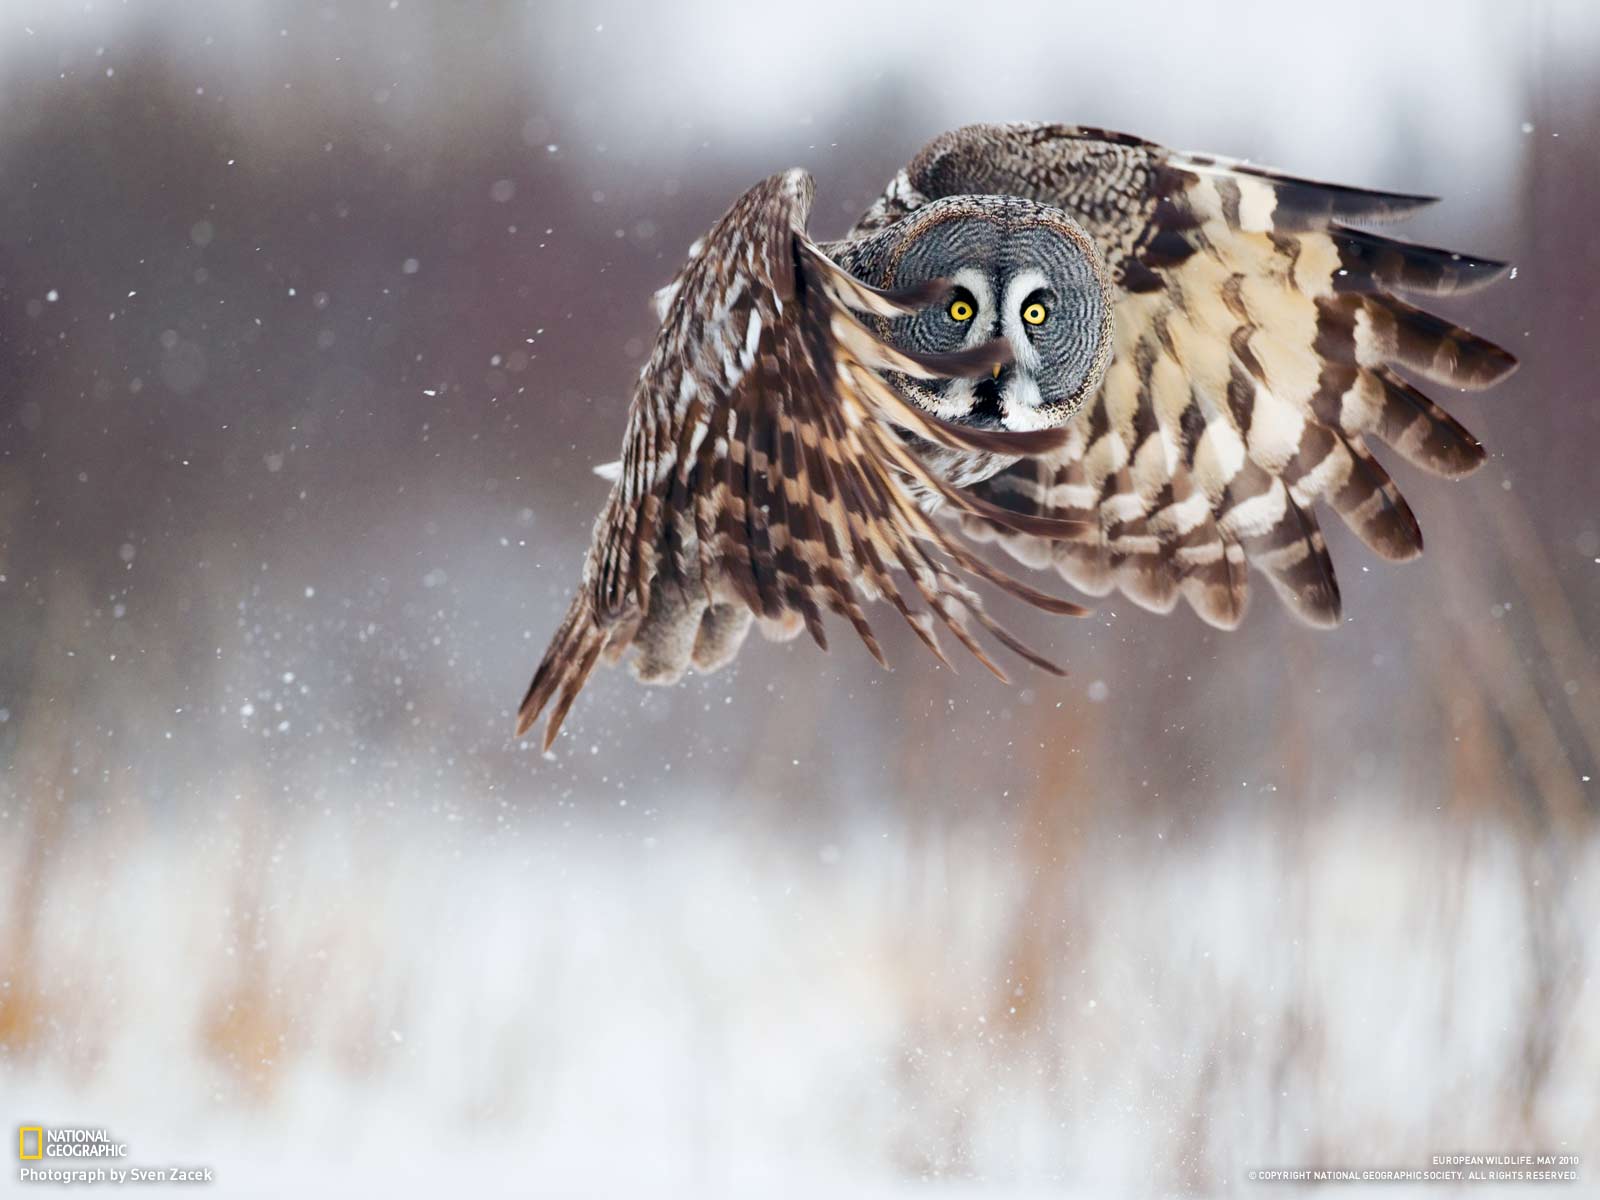 Owl in flight